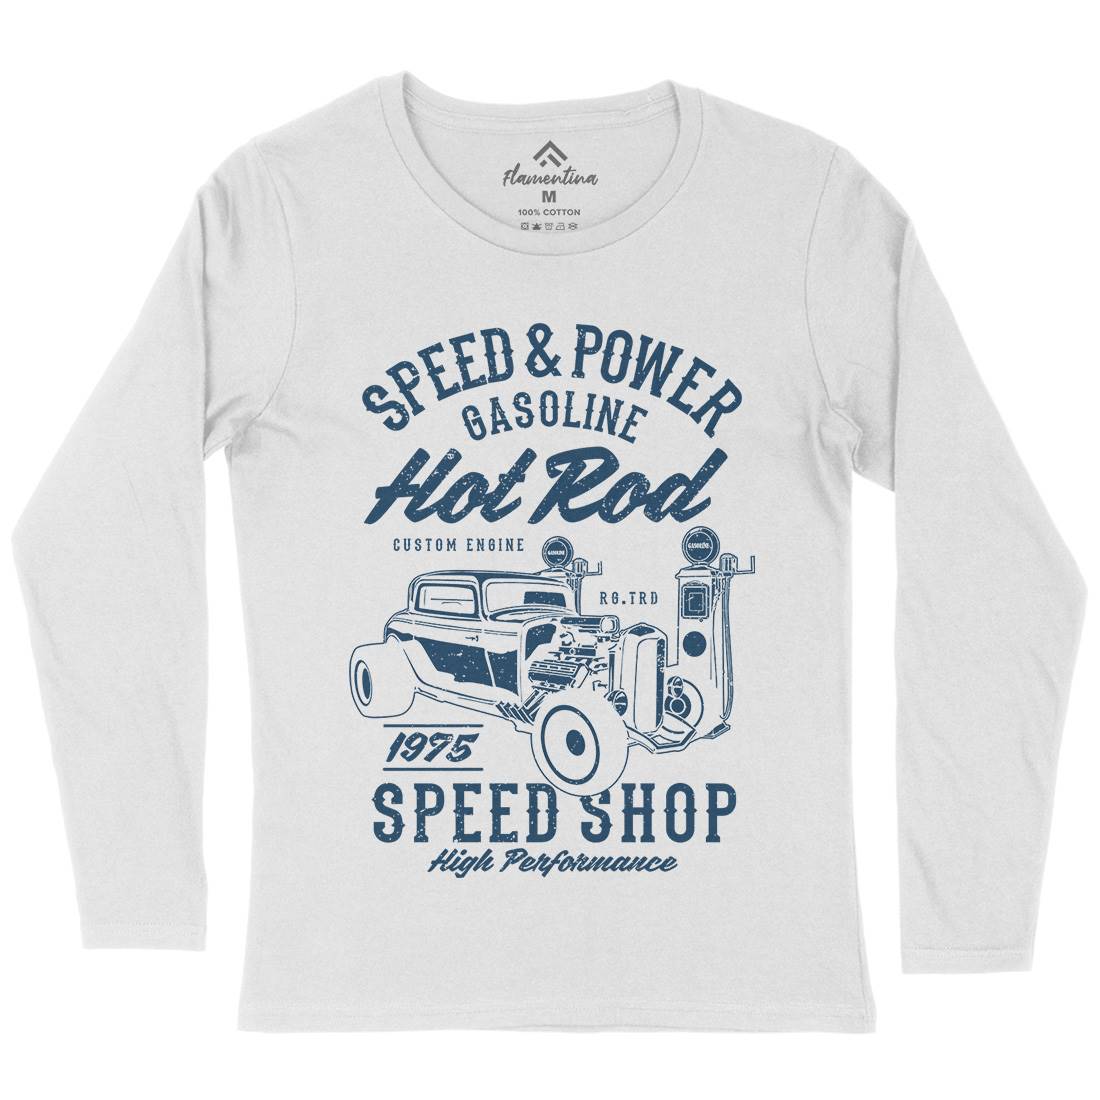 Speed Power Womens Long Sleeve T-Shirt Cars A760